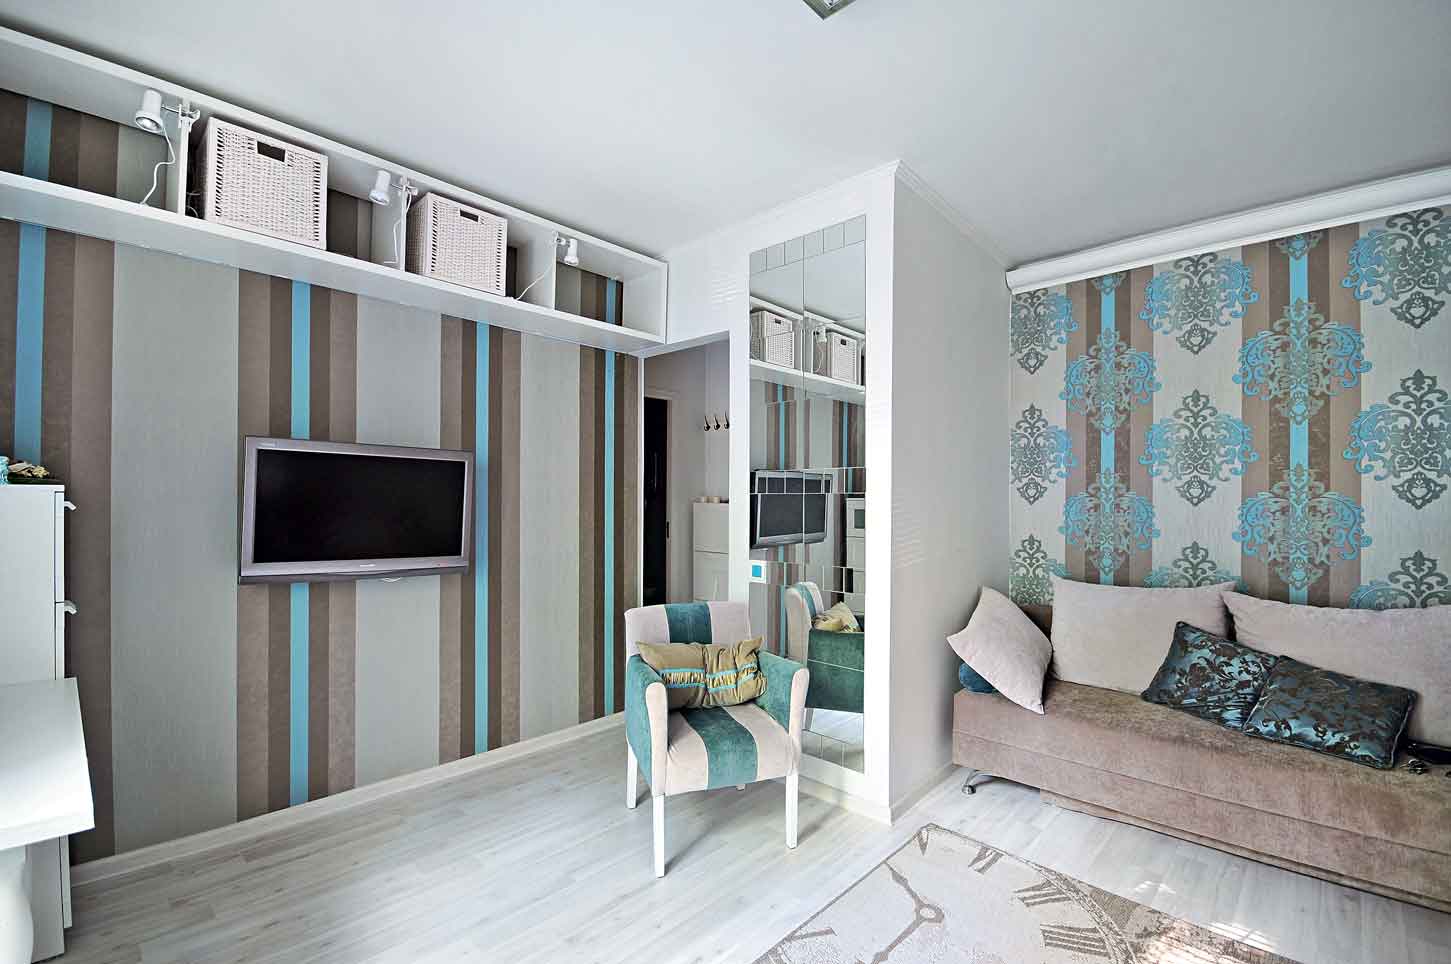 Дизайн маленькой комнаты в доме: отделочные материалы, подходящие стили, практические советы / Блог